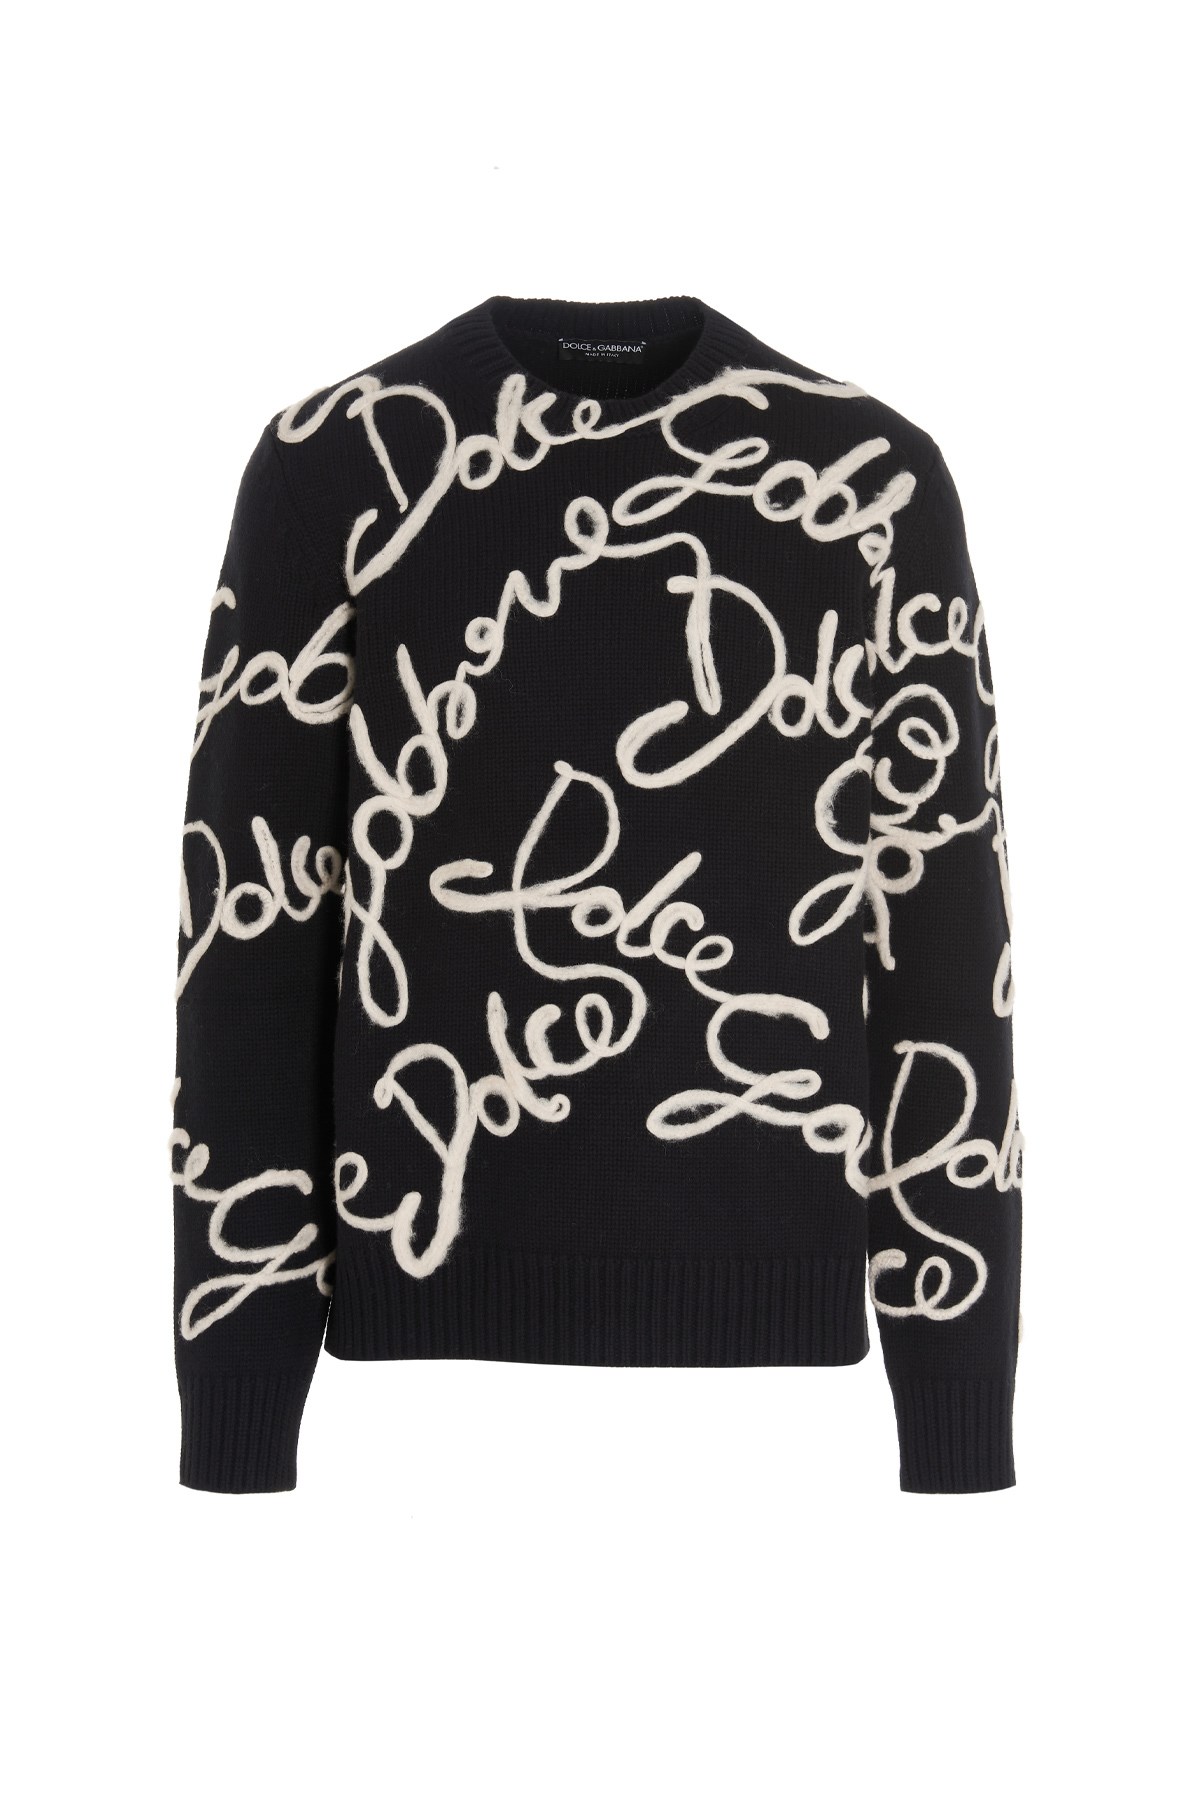 DOLCE & GABBANA Logo Intarsia Sweater